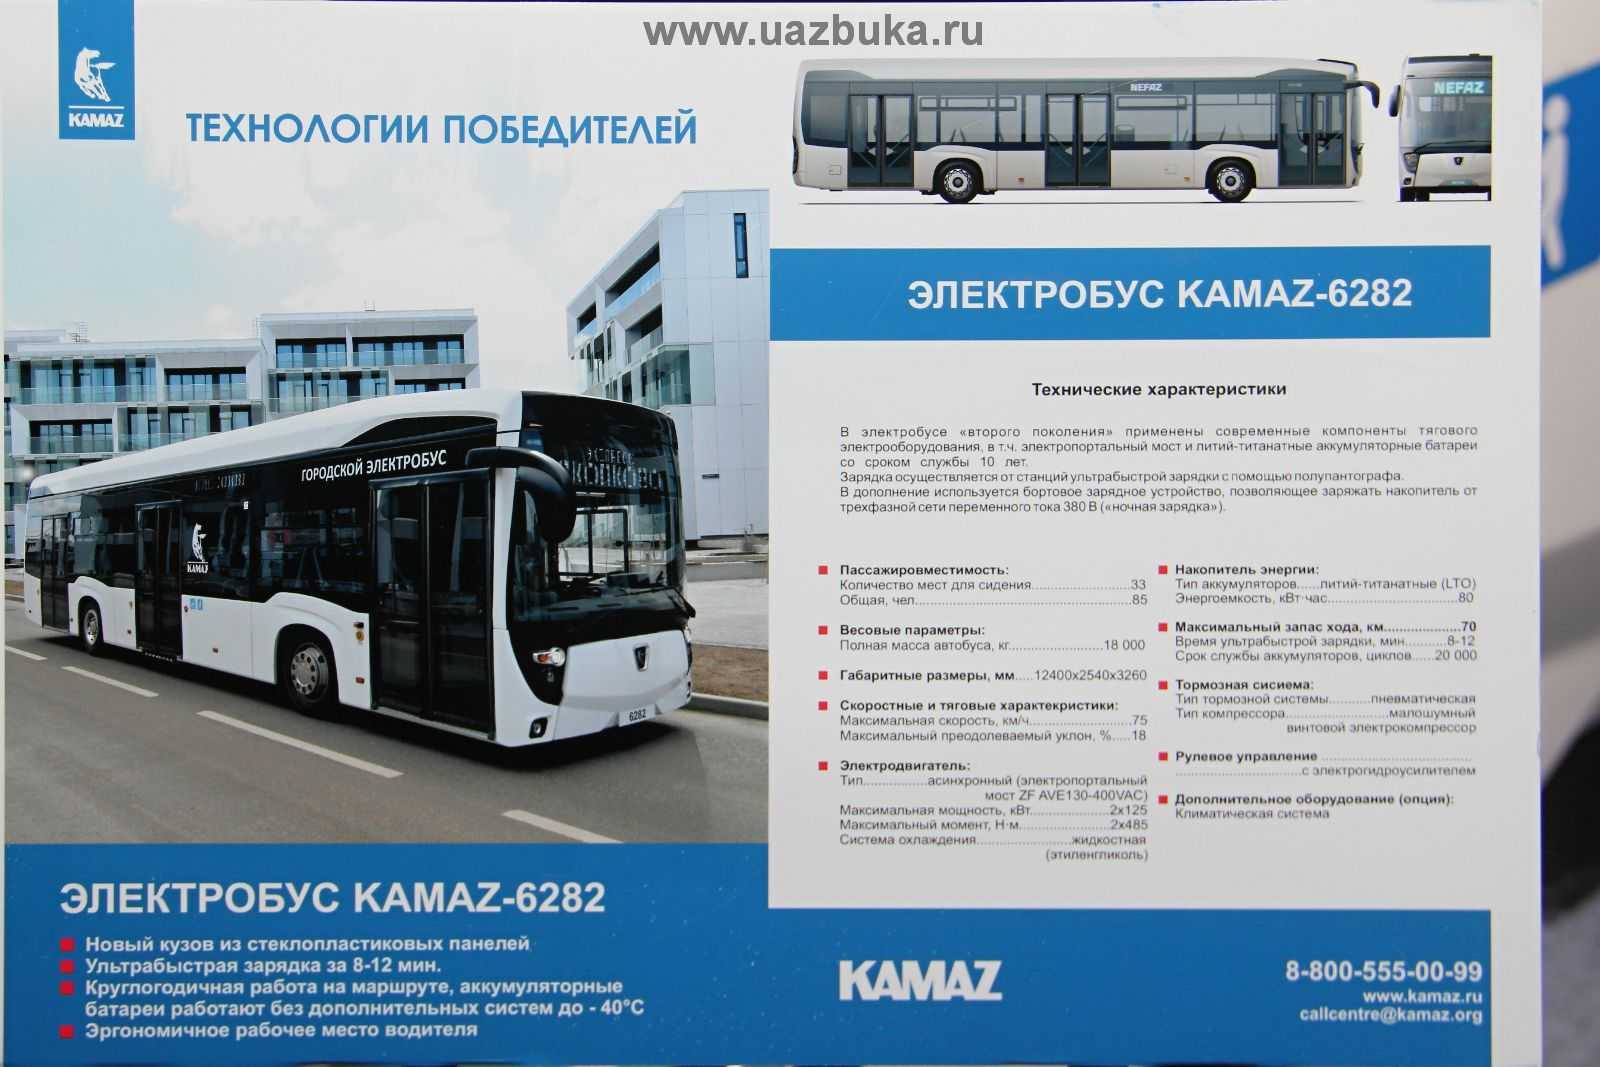 Средняя скорость движения электробуса. ЛИАЗ-6274 чертежи электробус. Электробус КАМАЗ-6282. Электробус КАМАЗ характеристики технические. Электробус КАМАЗ-6282 схема.